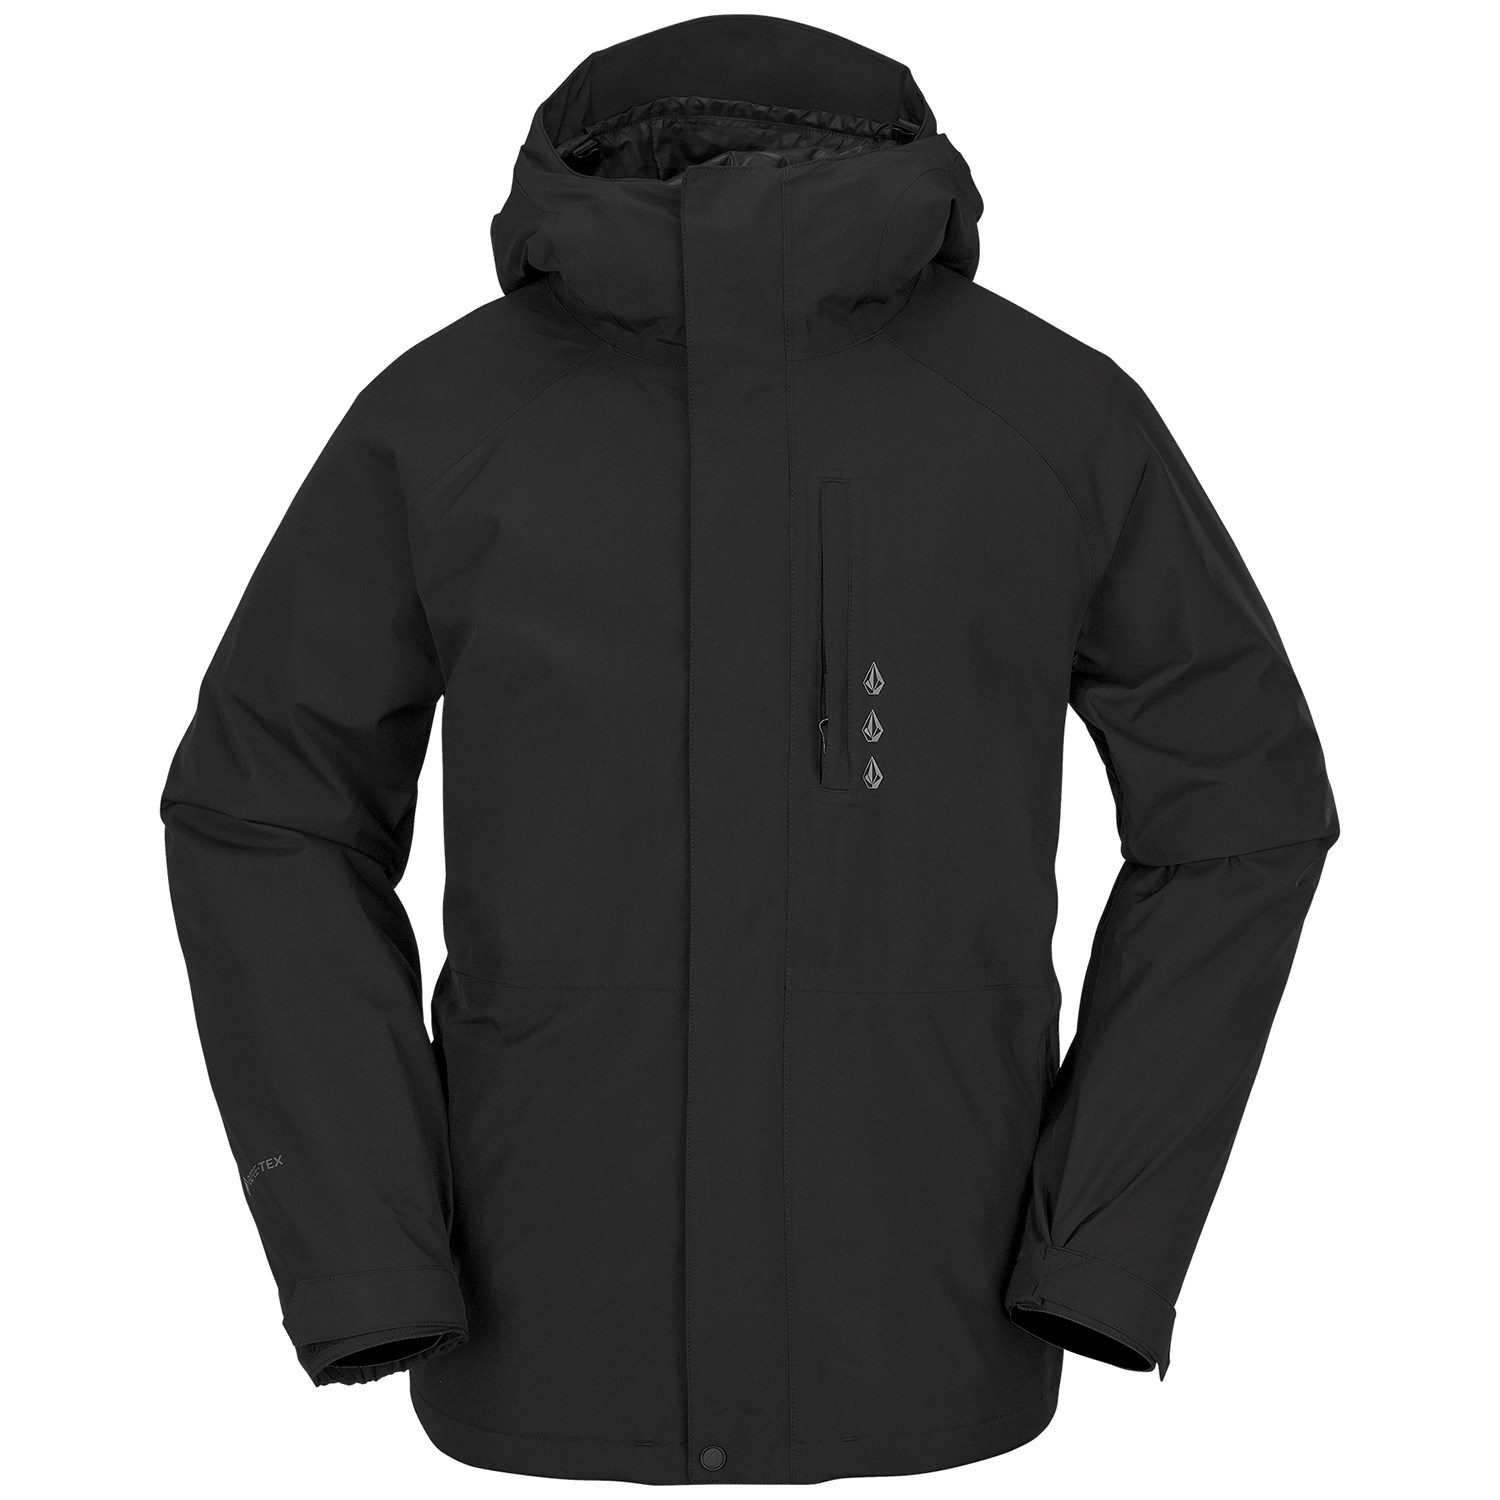 Куртка Volcom Dua Goretex утепленная, черный куртка утепленная для мальчиков demix черный